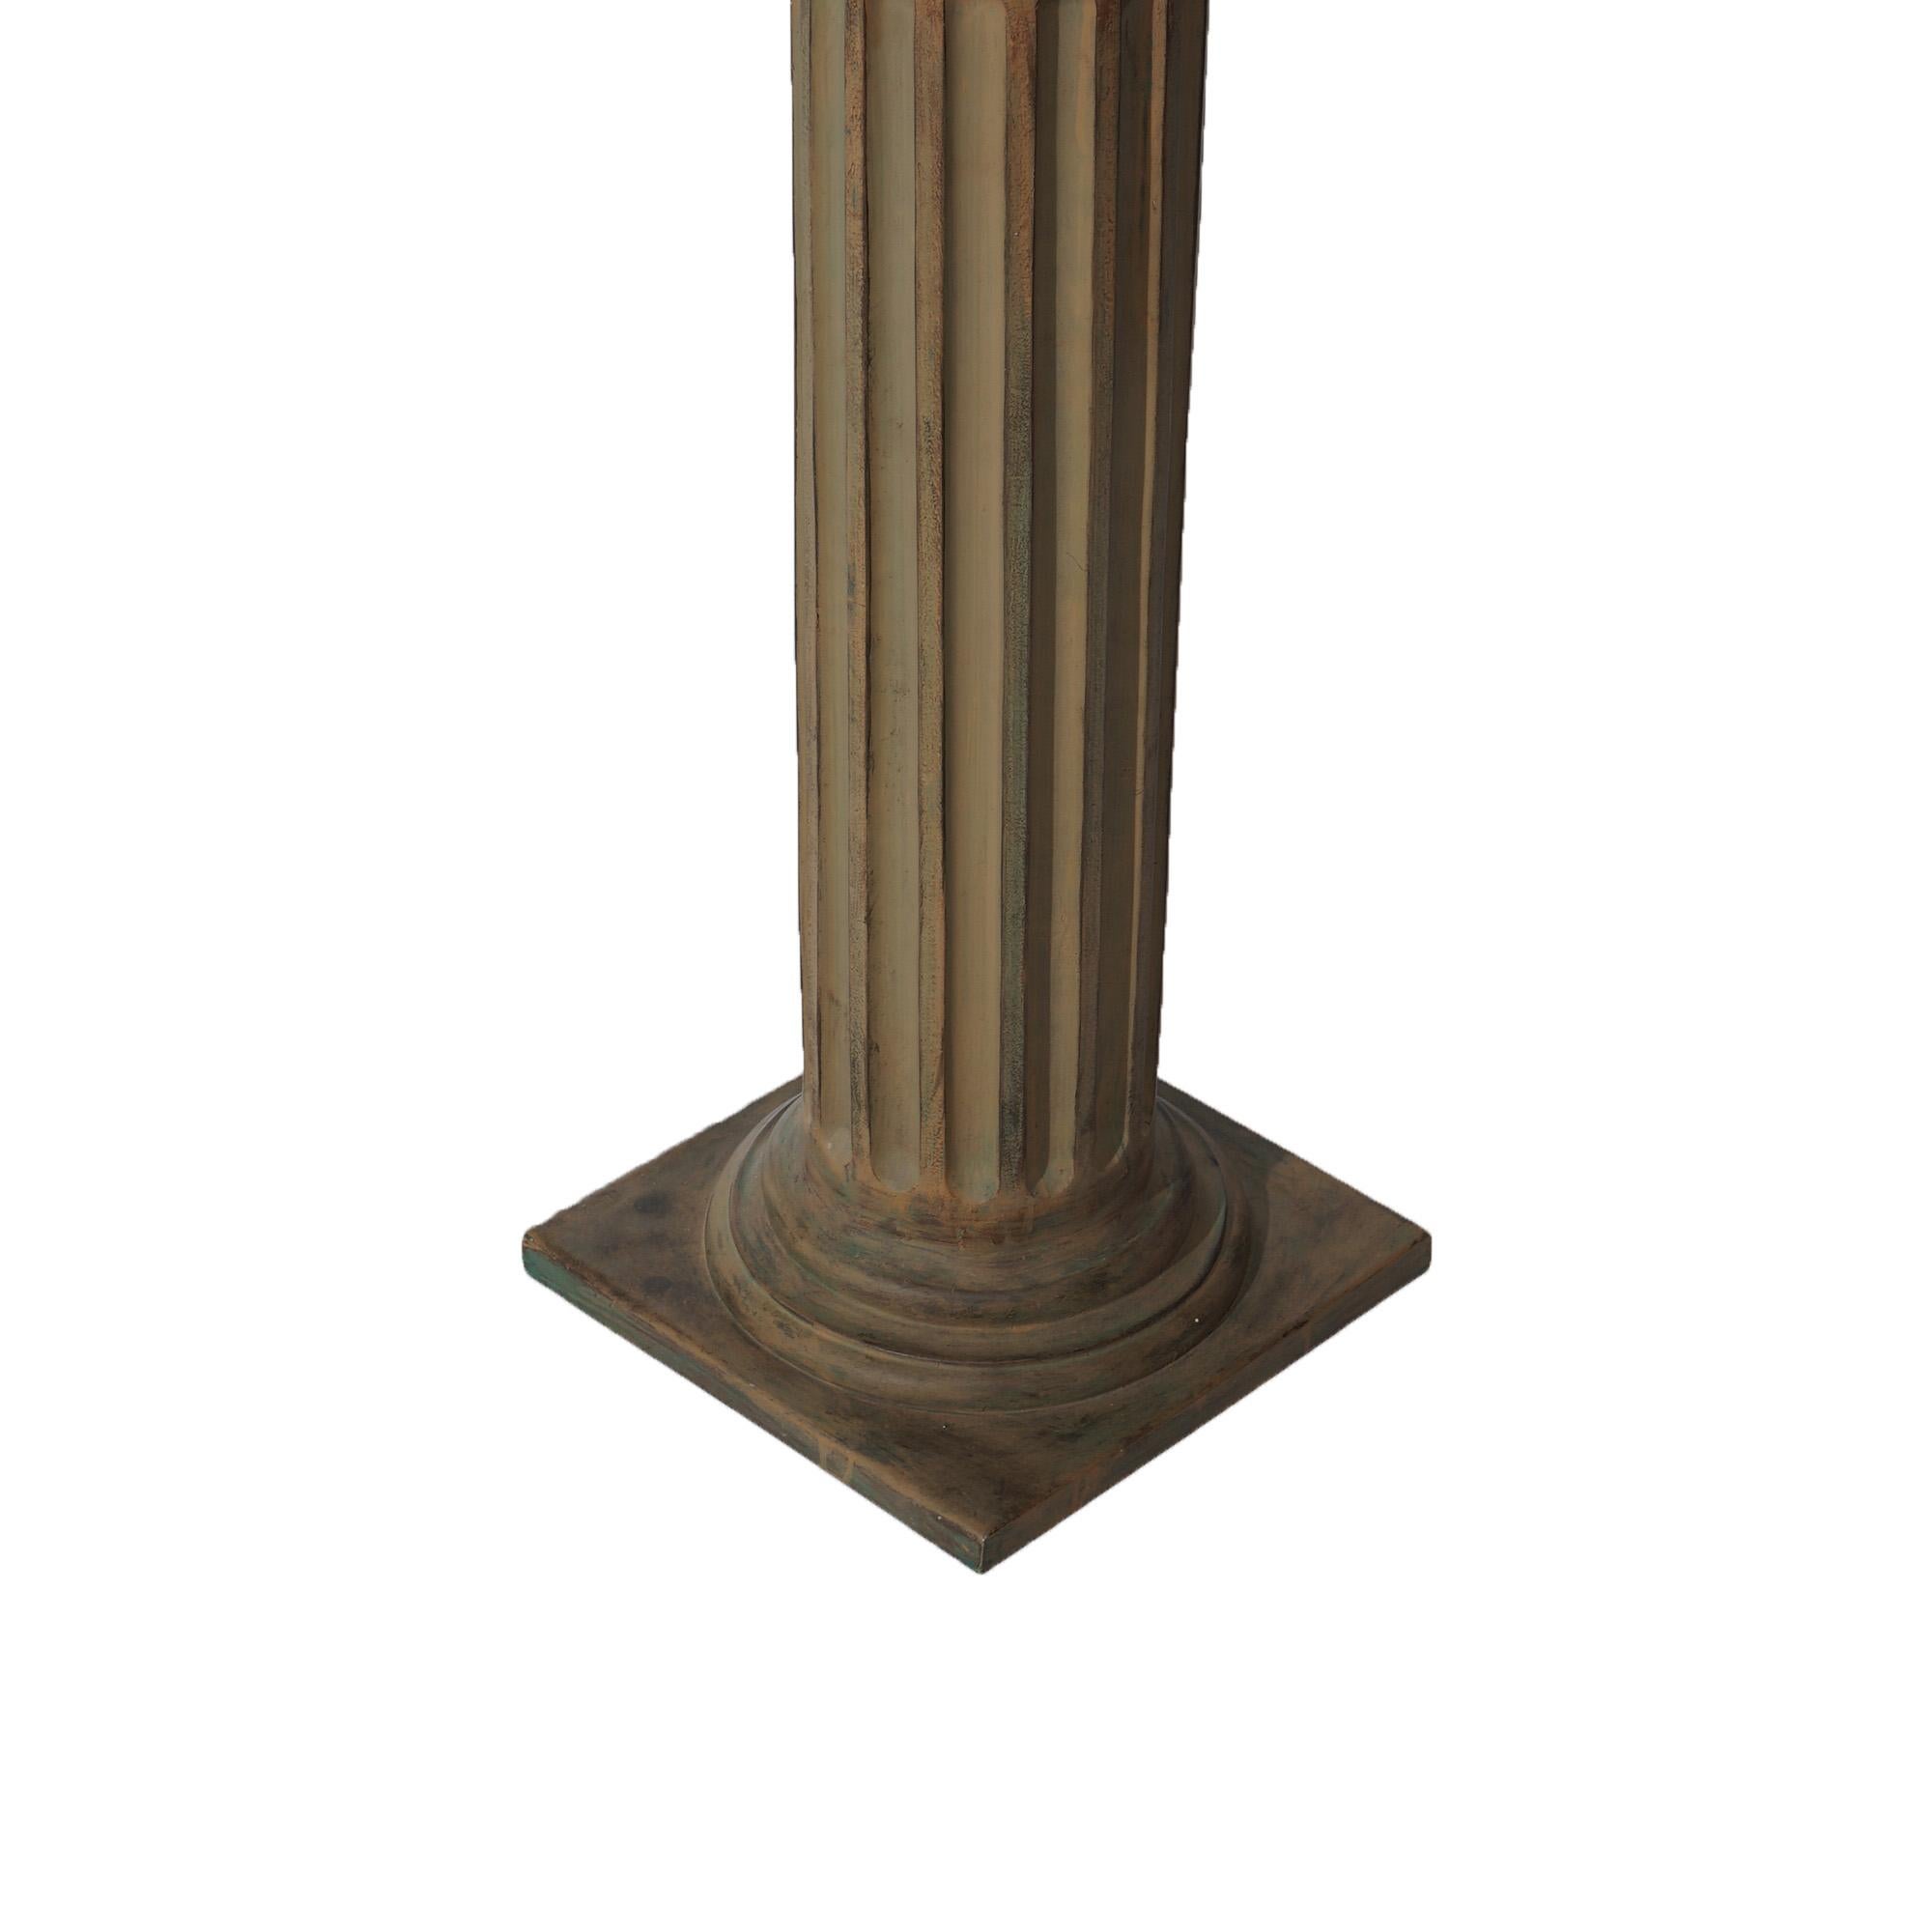 Pair Neoclassical Corinthian Column Form Composite Sculpture Pedestals 20thC For Sale 4